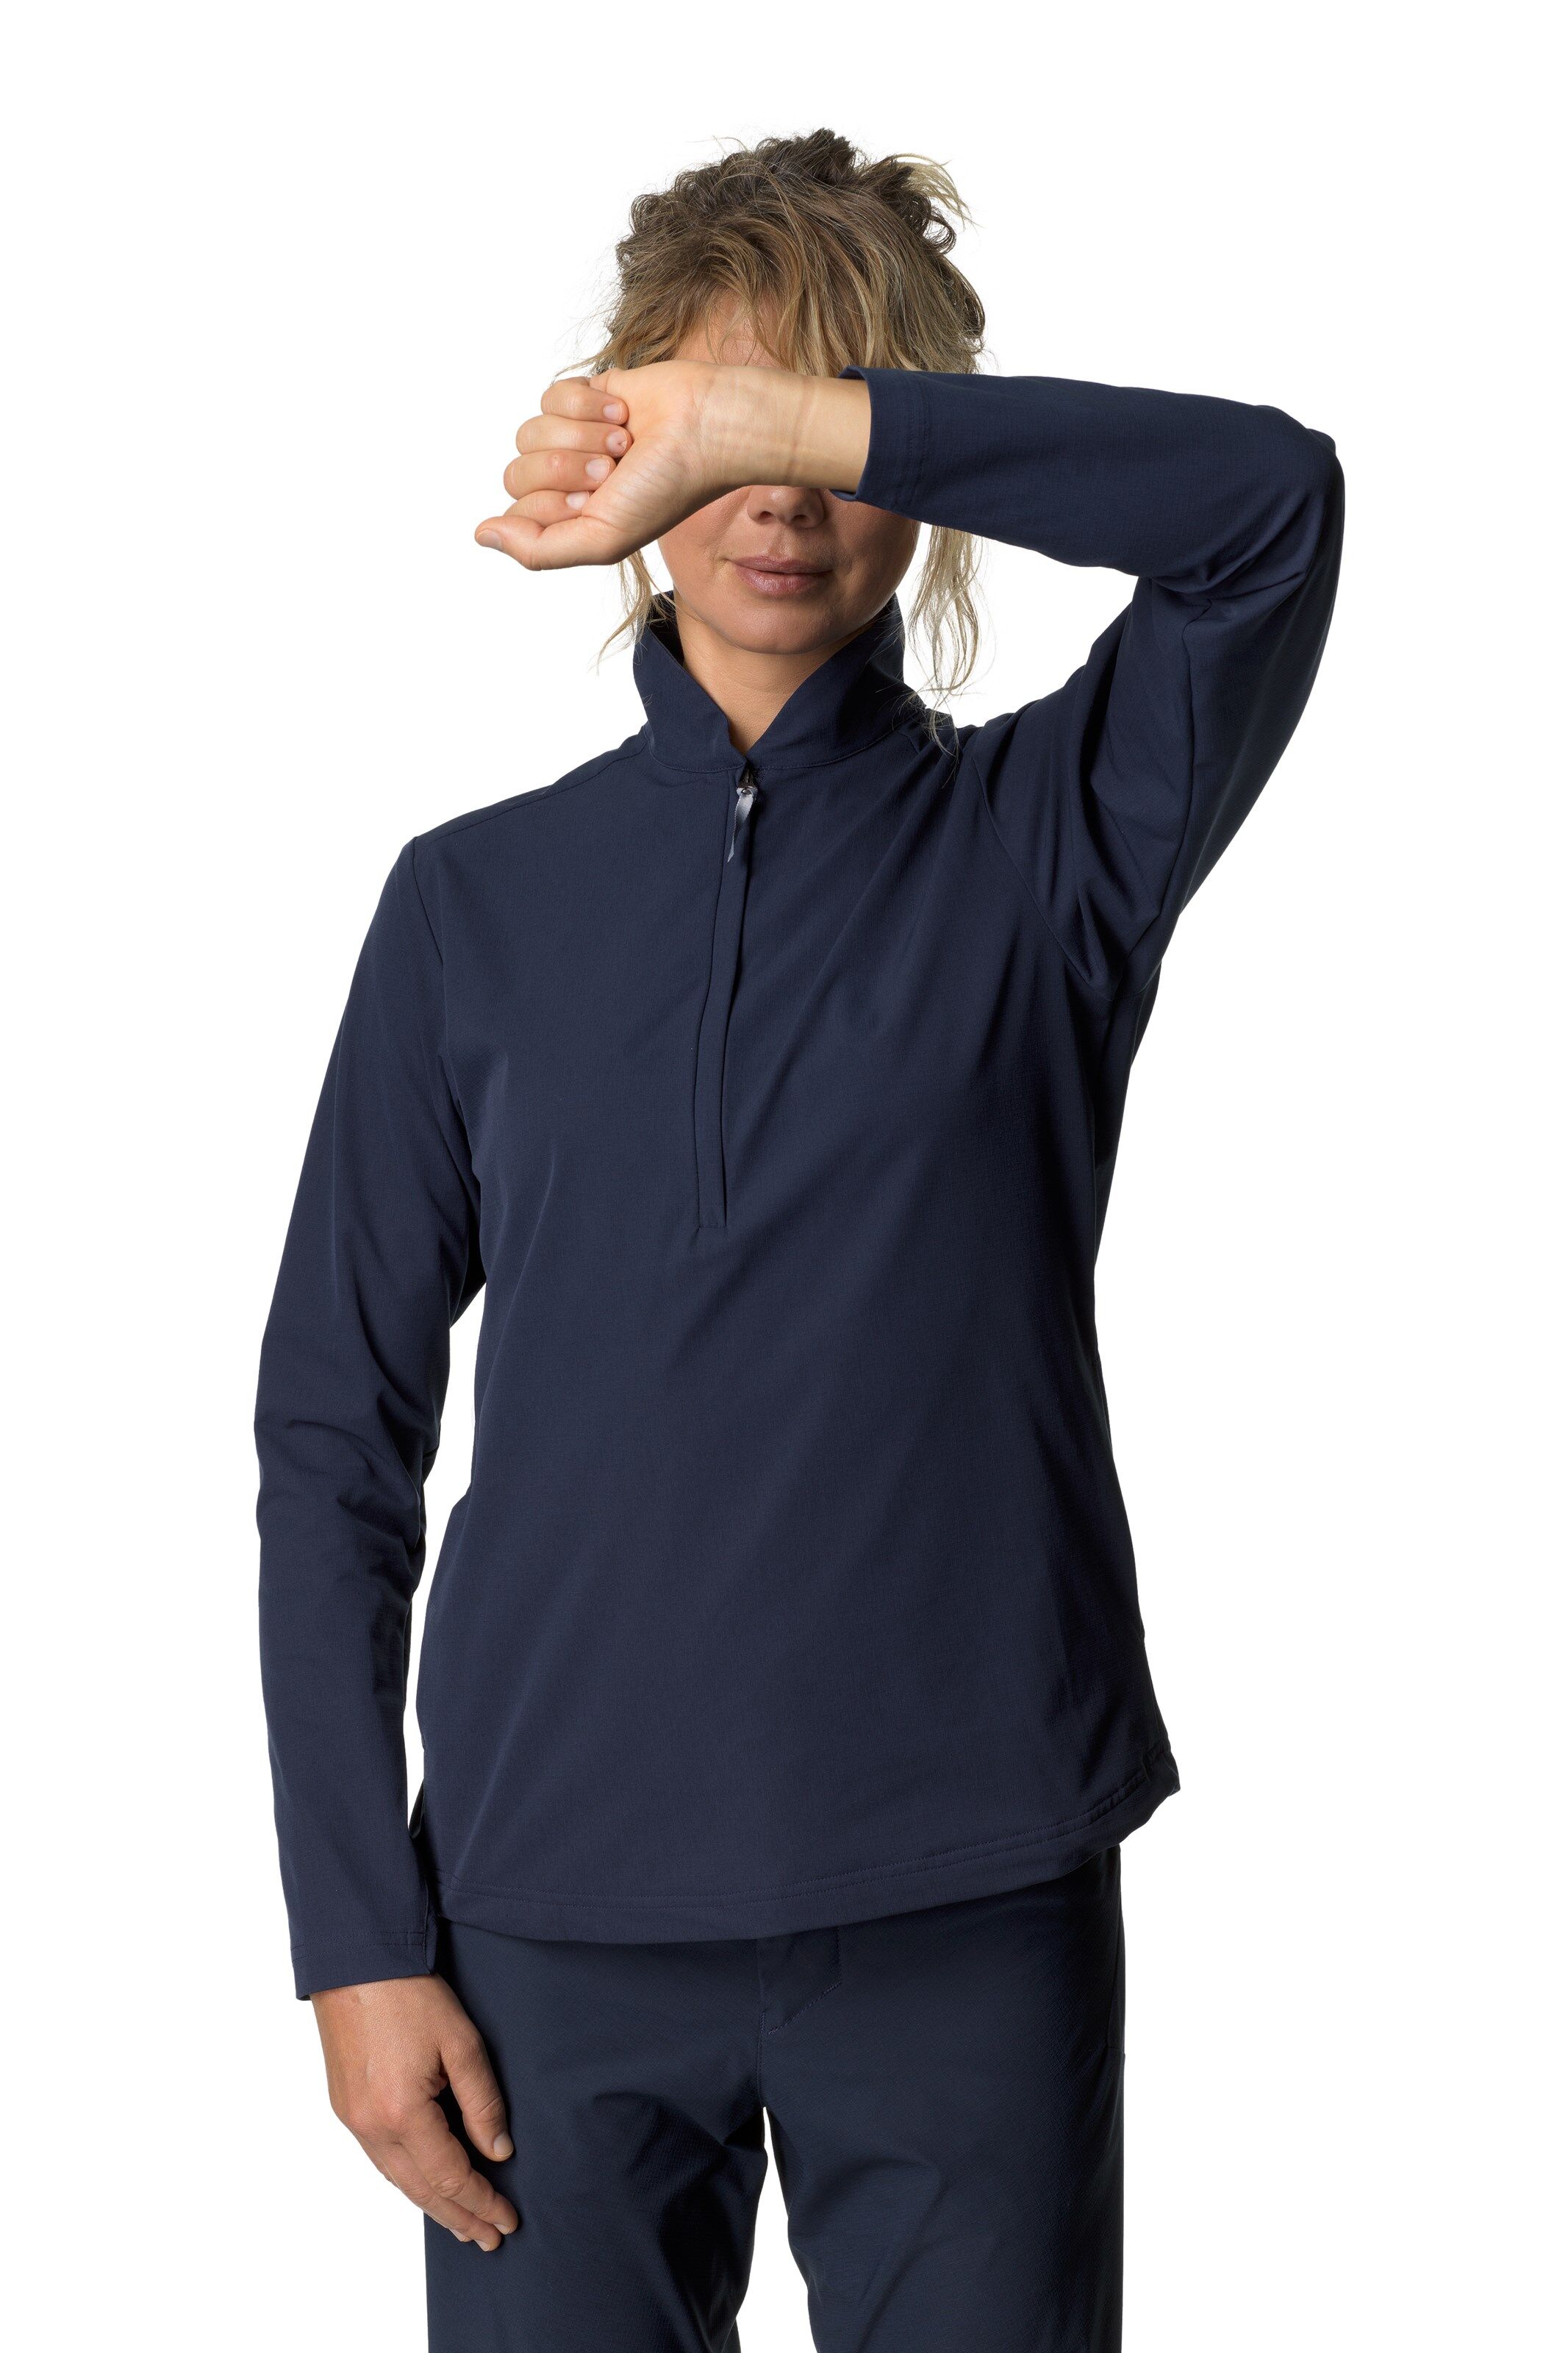 Houdini Daybreak Pullover, jakke / skjorte dame Blue Illusion 149854 S 2020